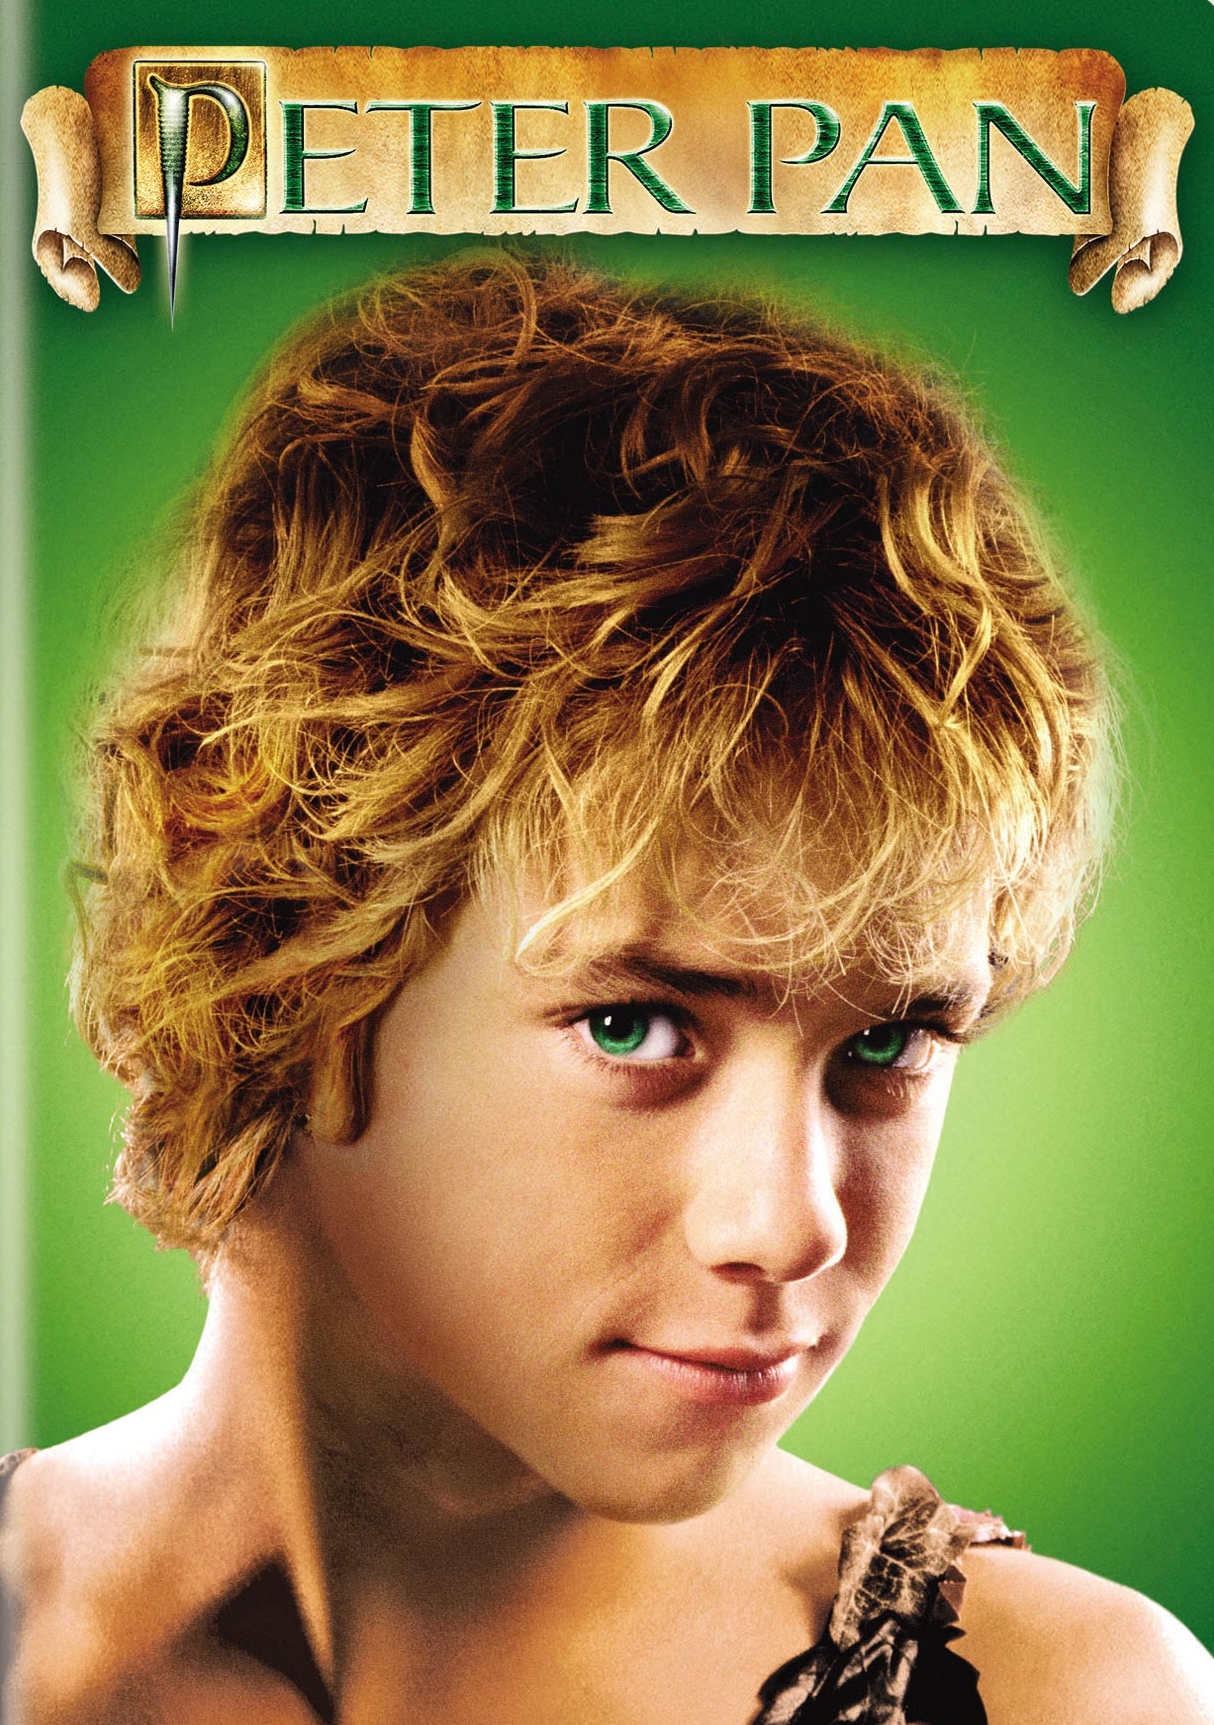 Peter Pan [DVD] [2003]